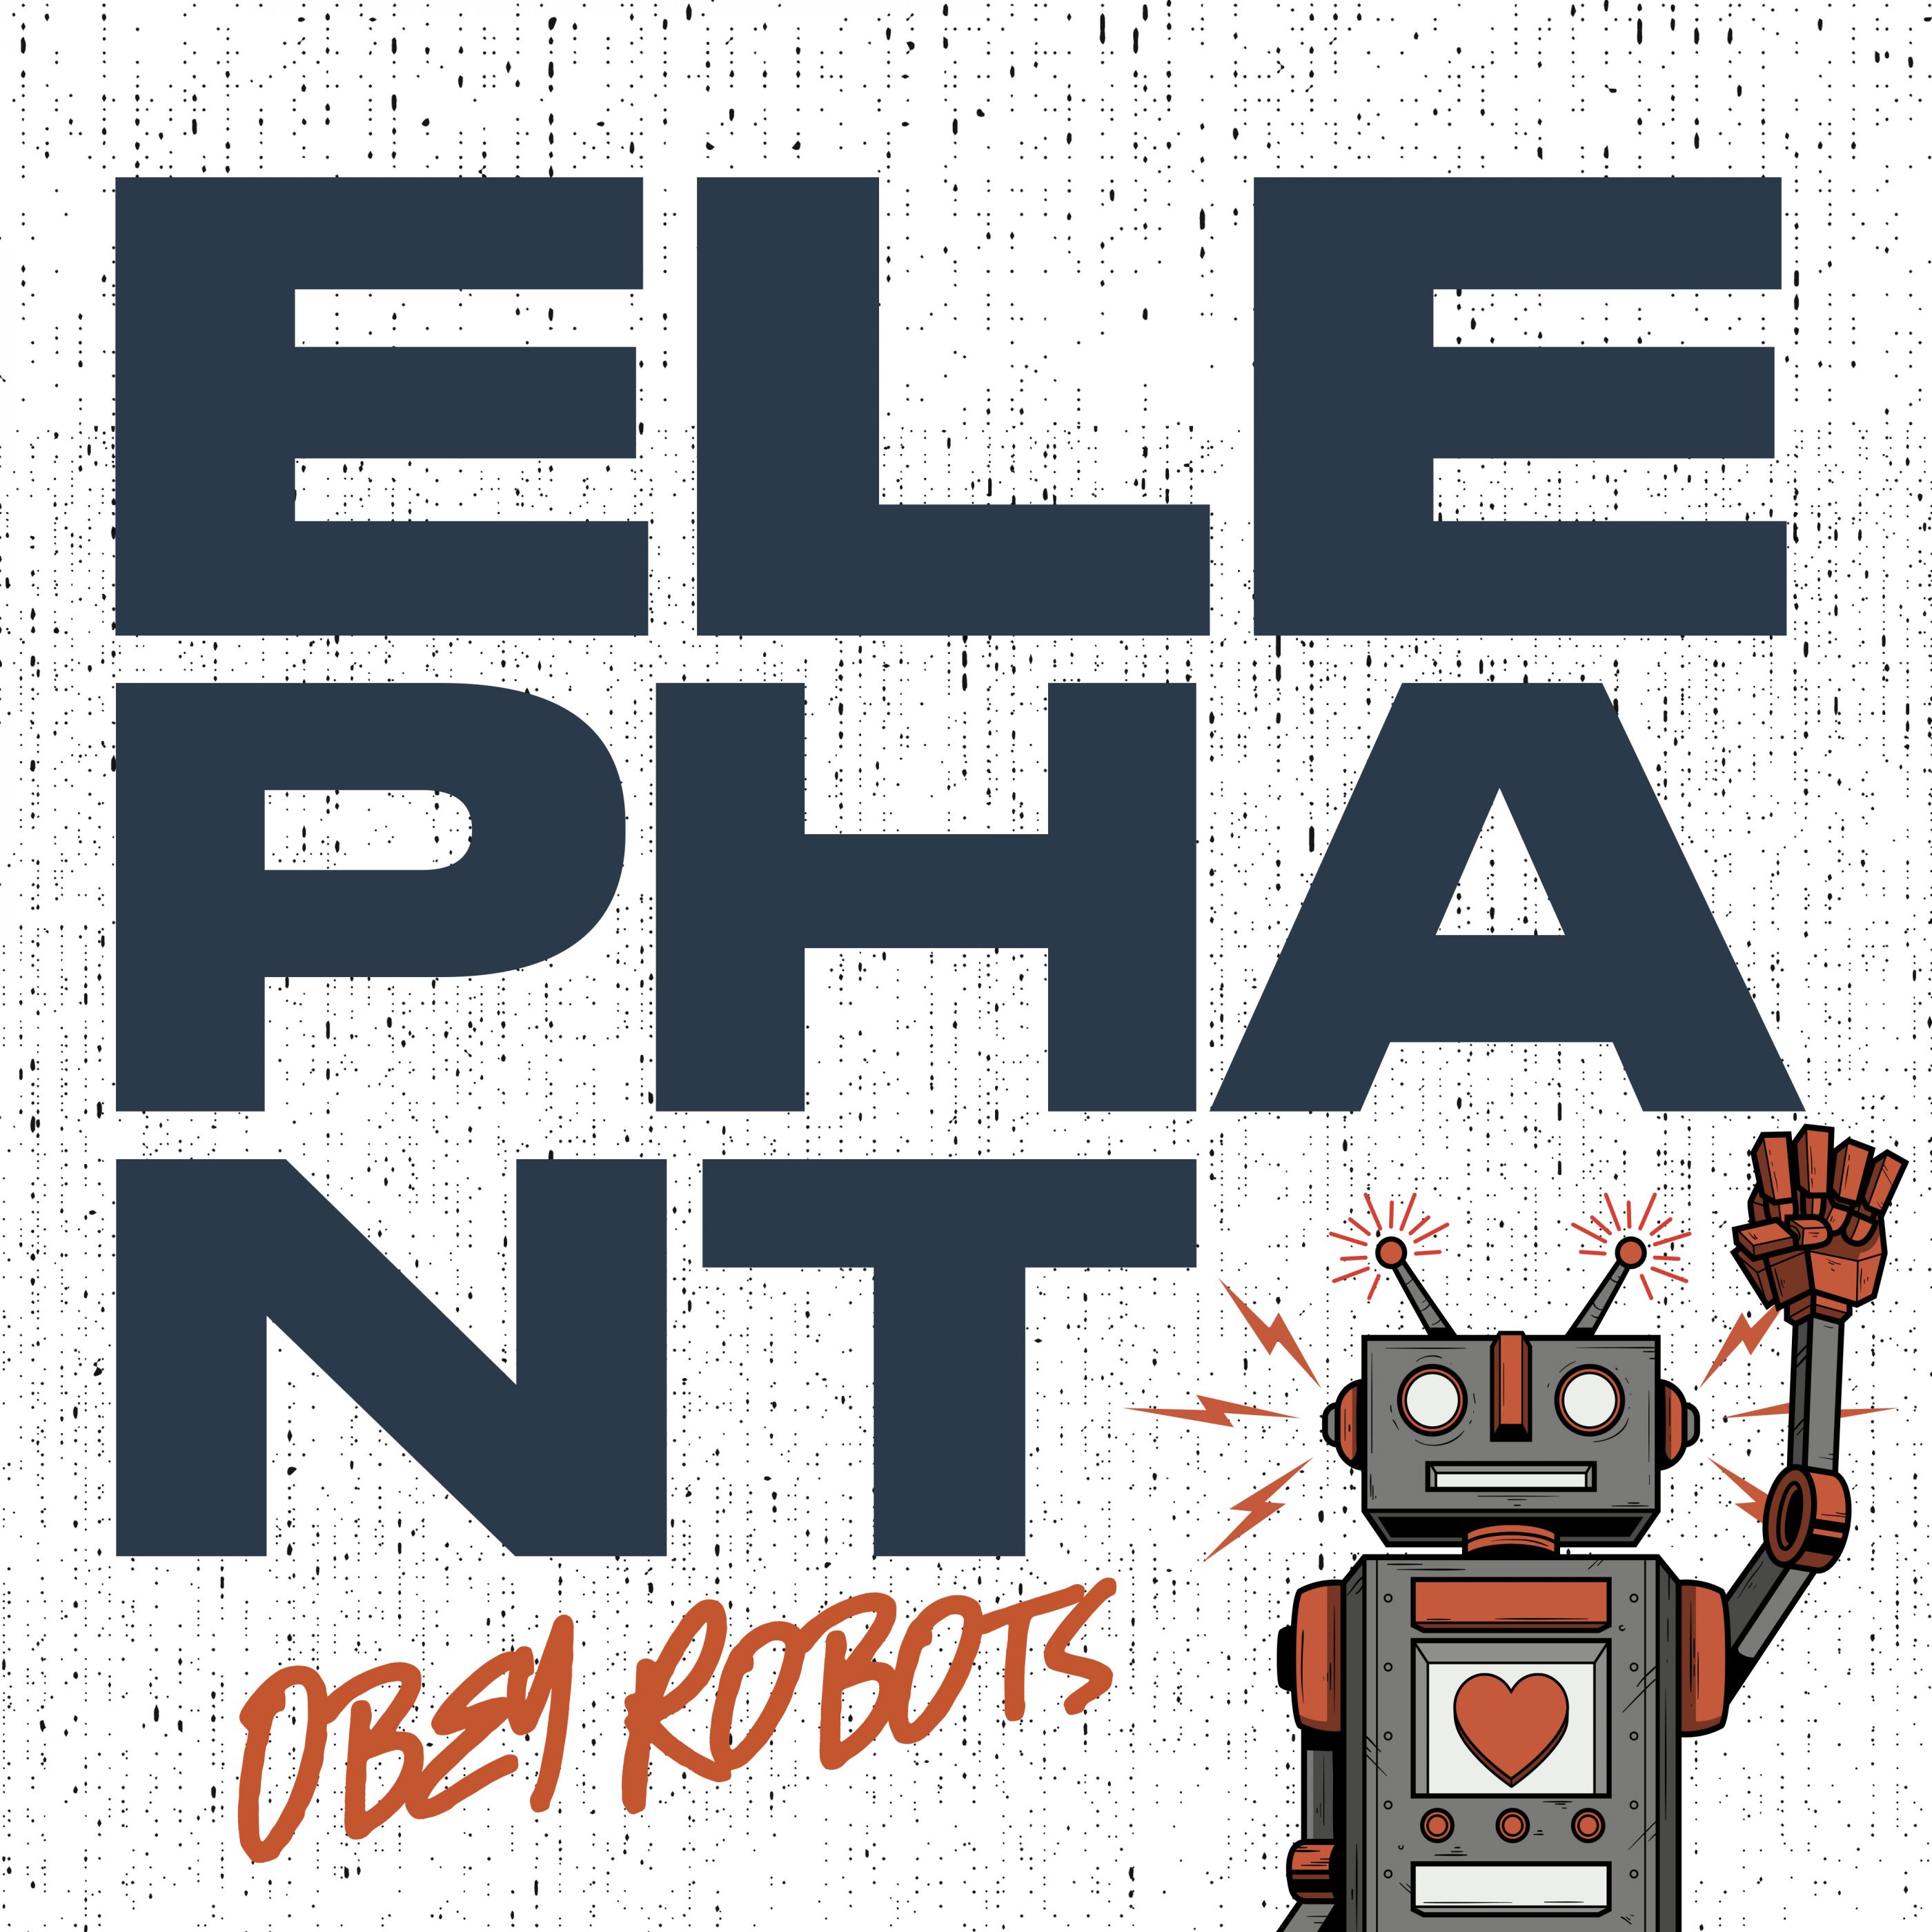 “Elephant” – Obey Robots